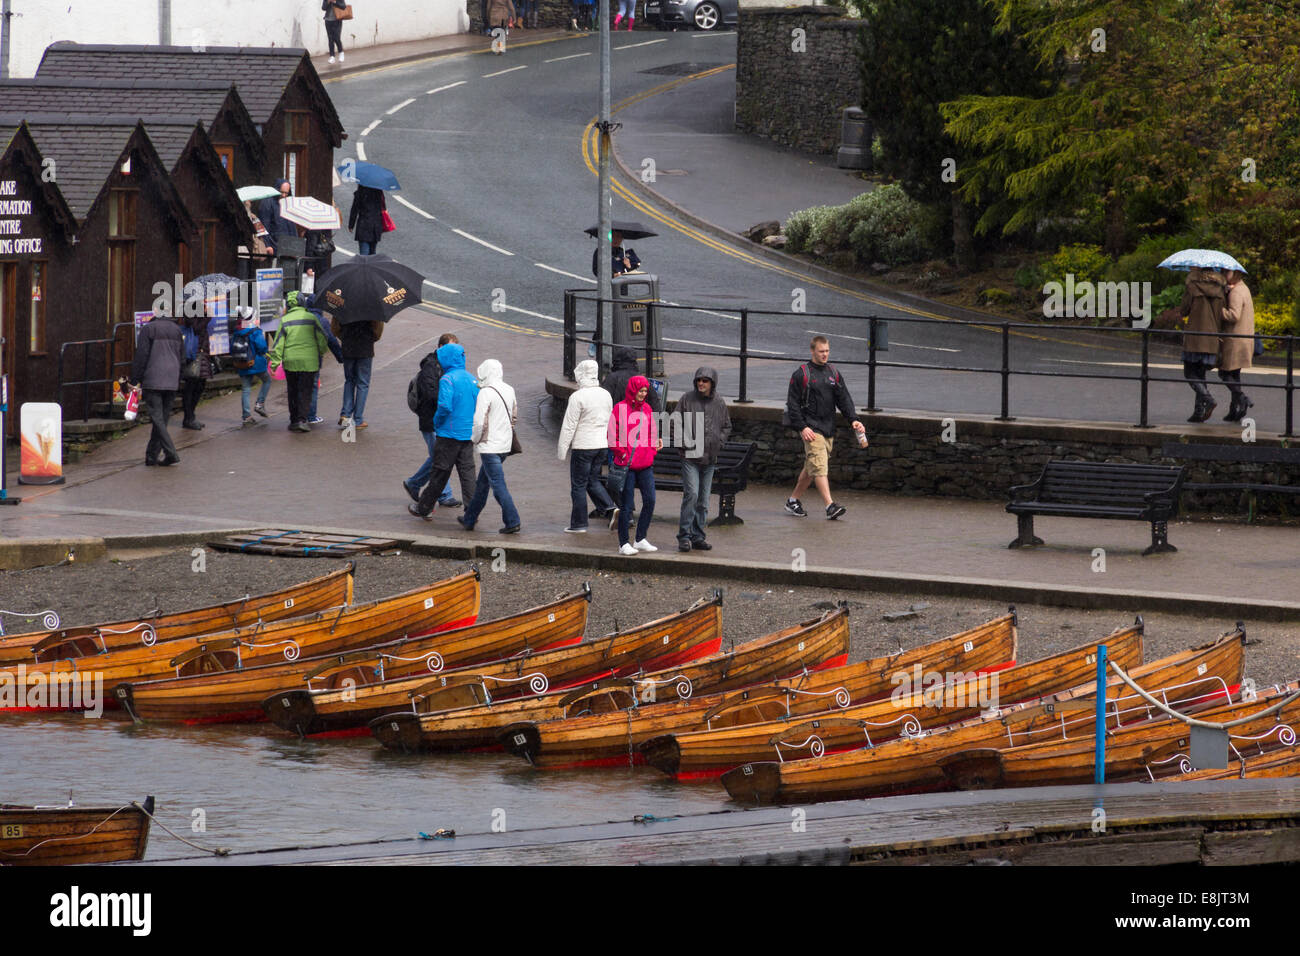 Barques échouées et de petits nombres d'imperméable-clad passants près de la jetée de Bowness, Cumbria sur une très terne et pluvieux. Banque D'Images